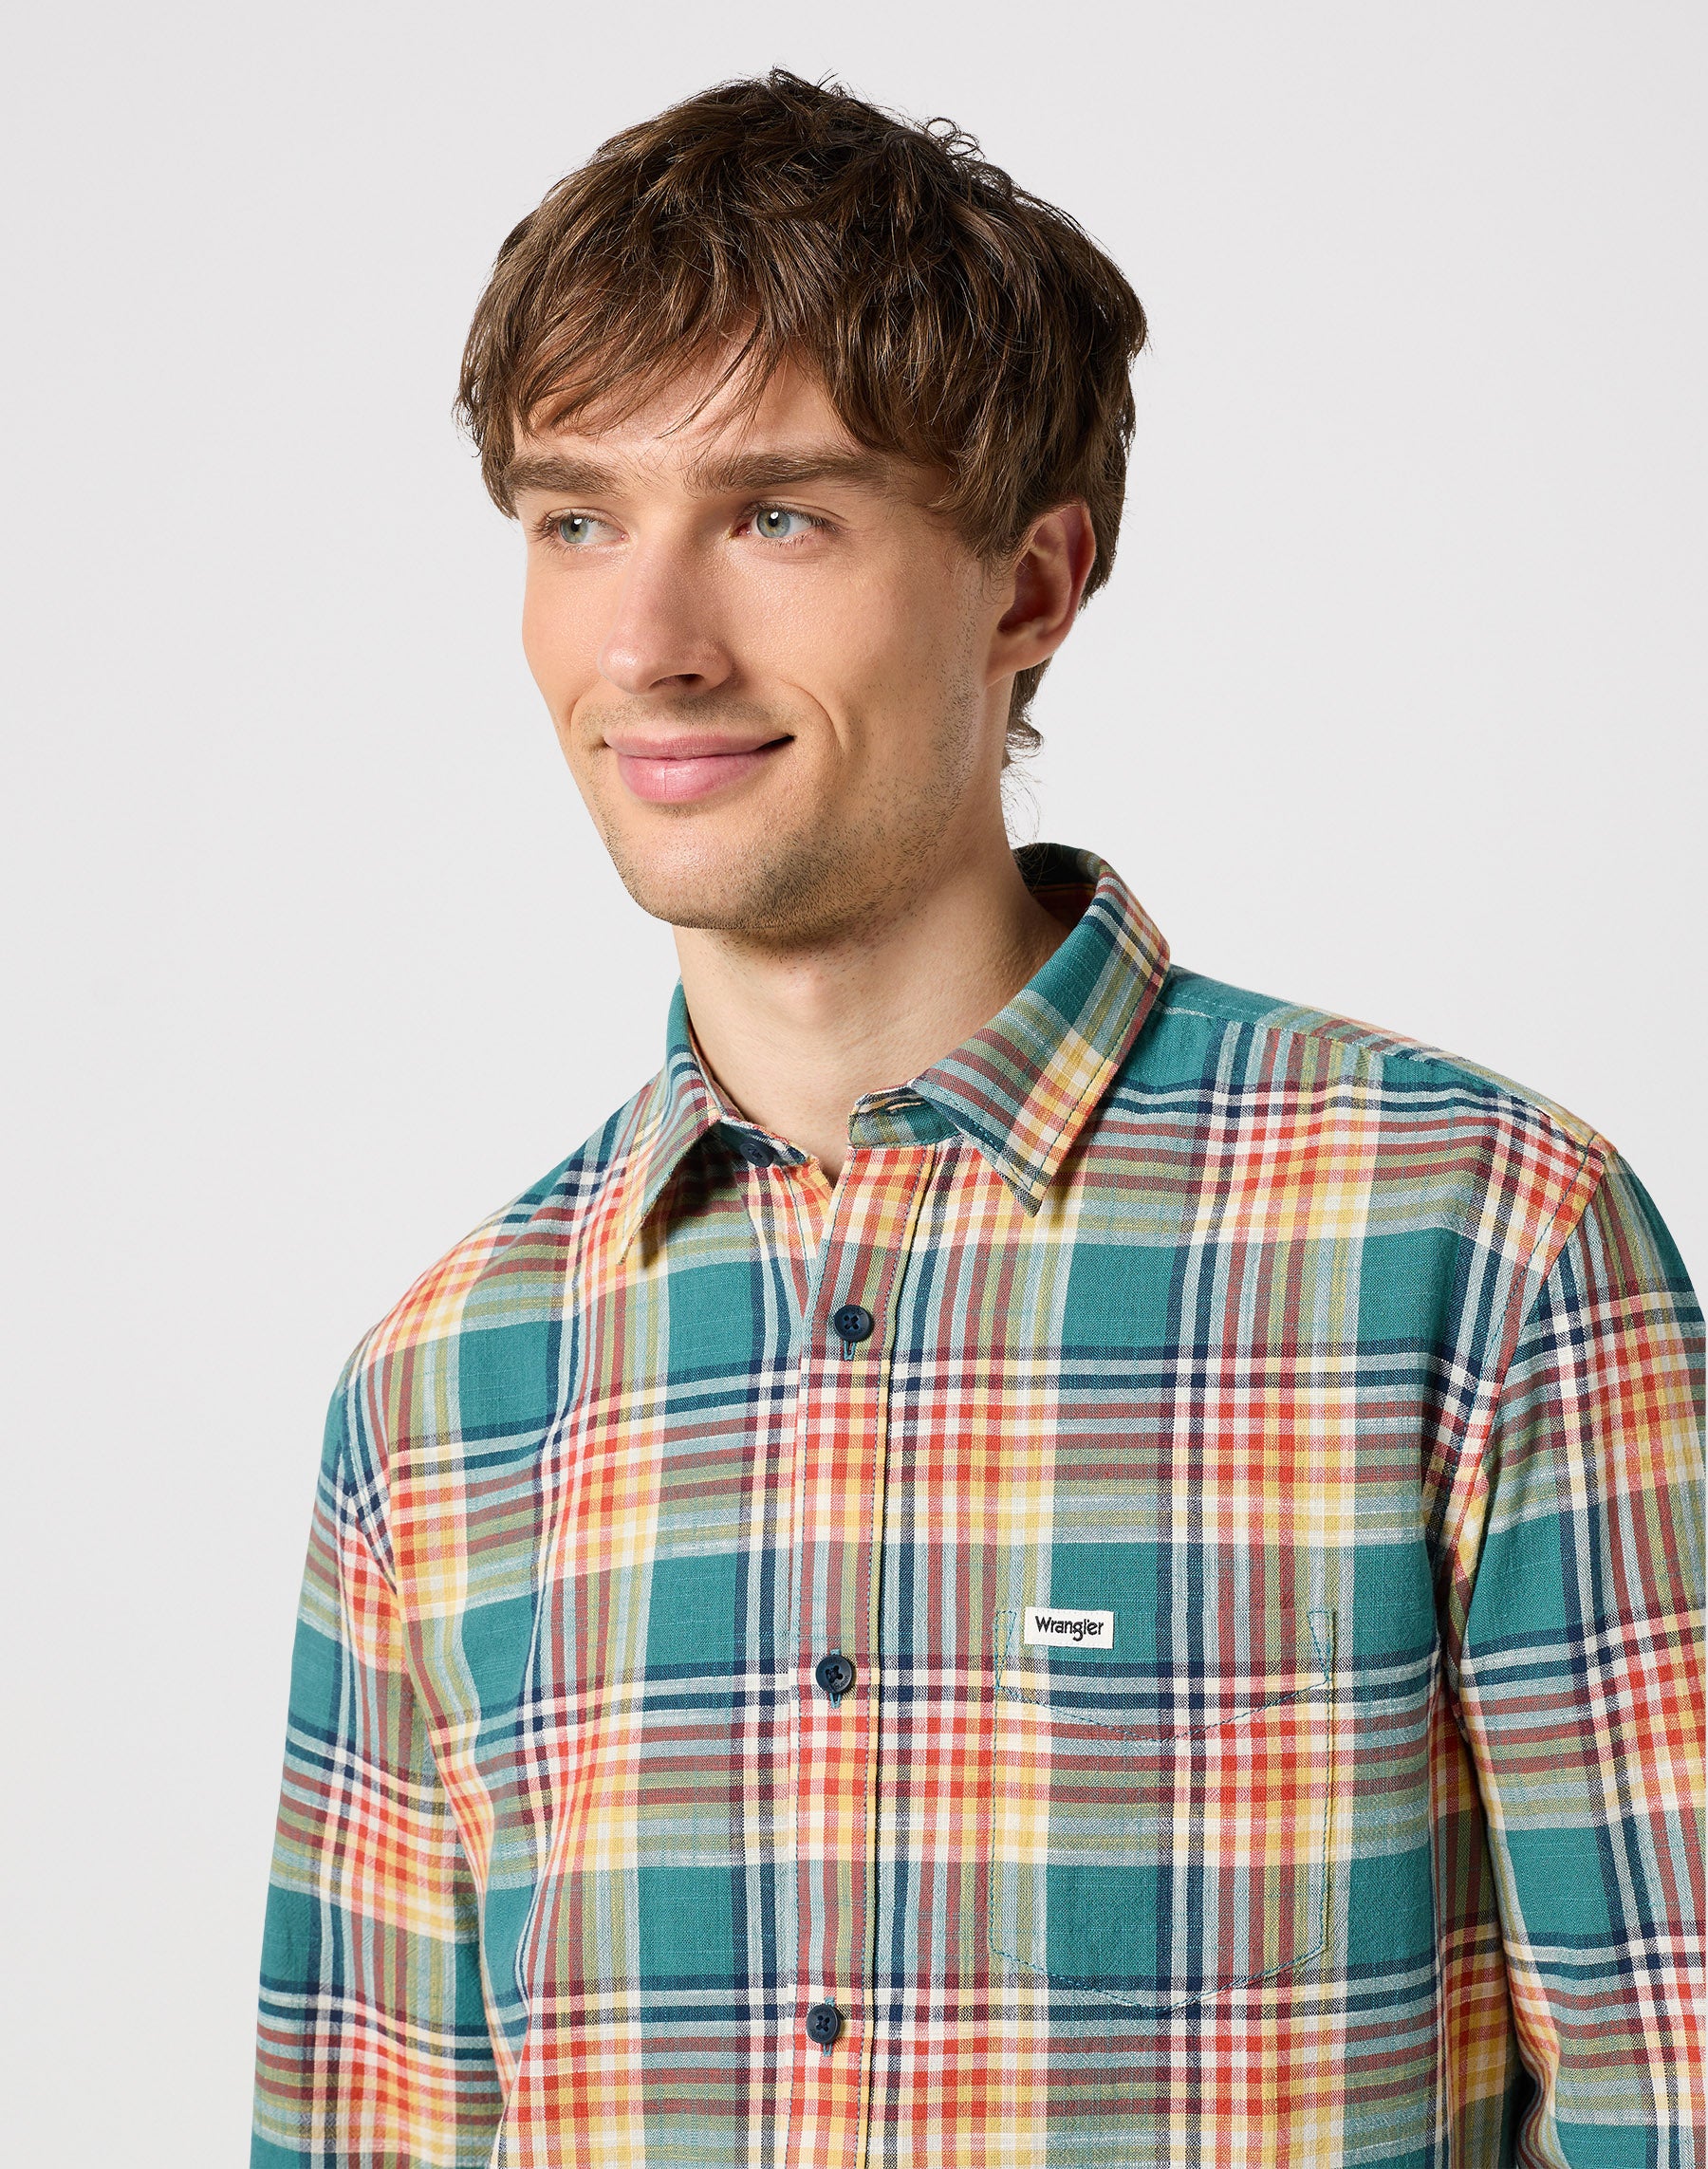 Longsleeves One Pocket Shirt in Hydro Hemden Wrangler   